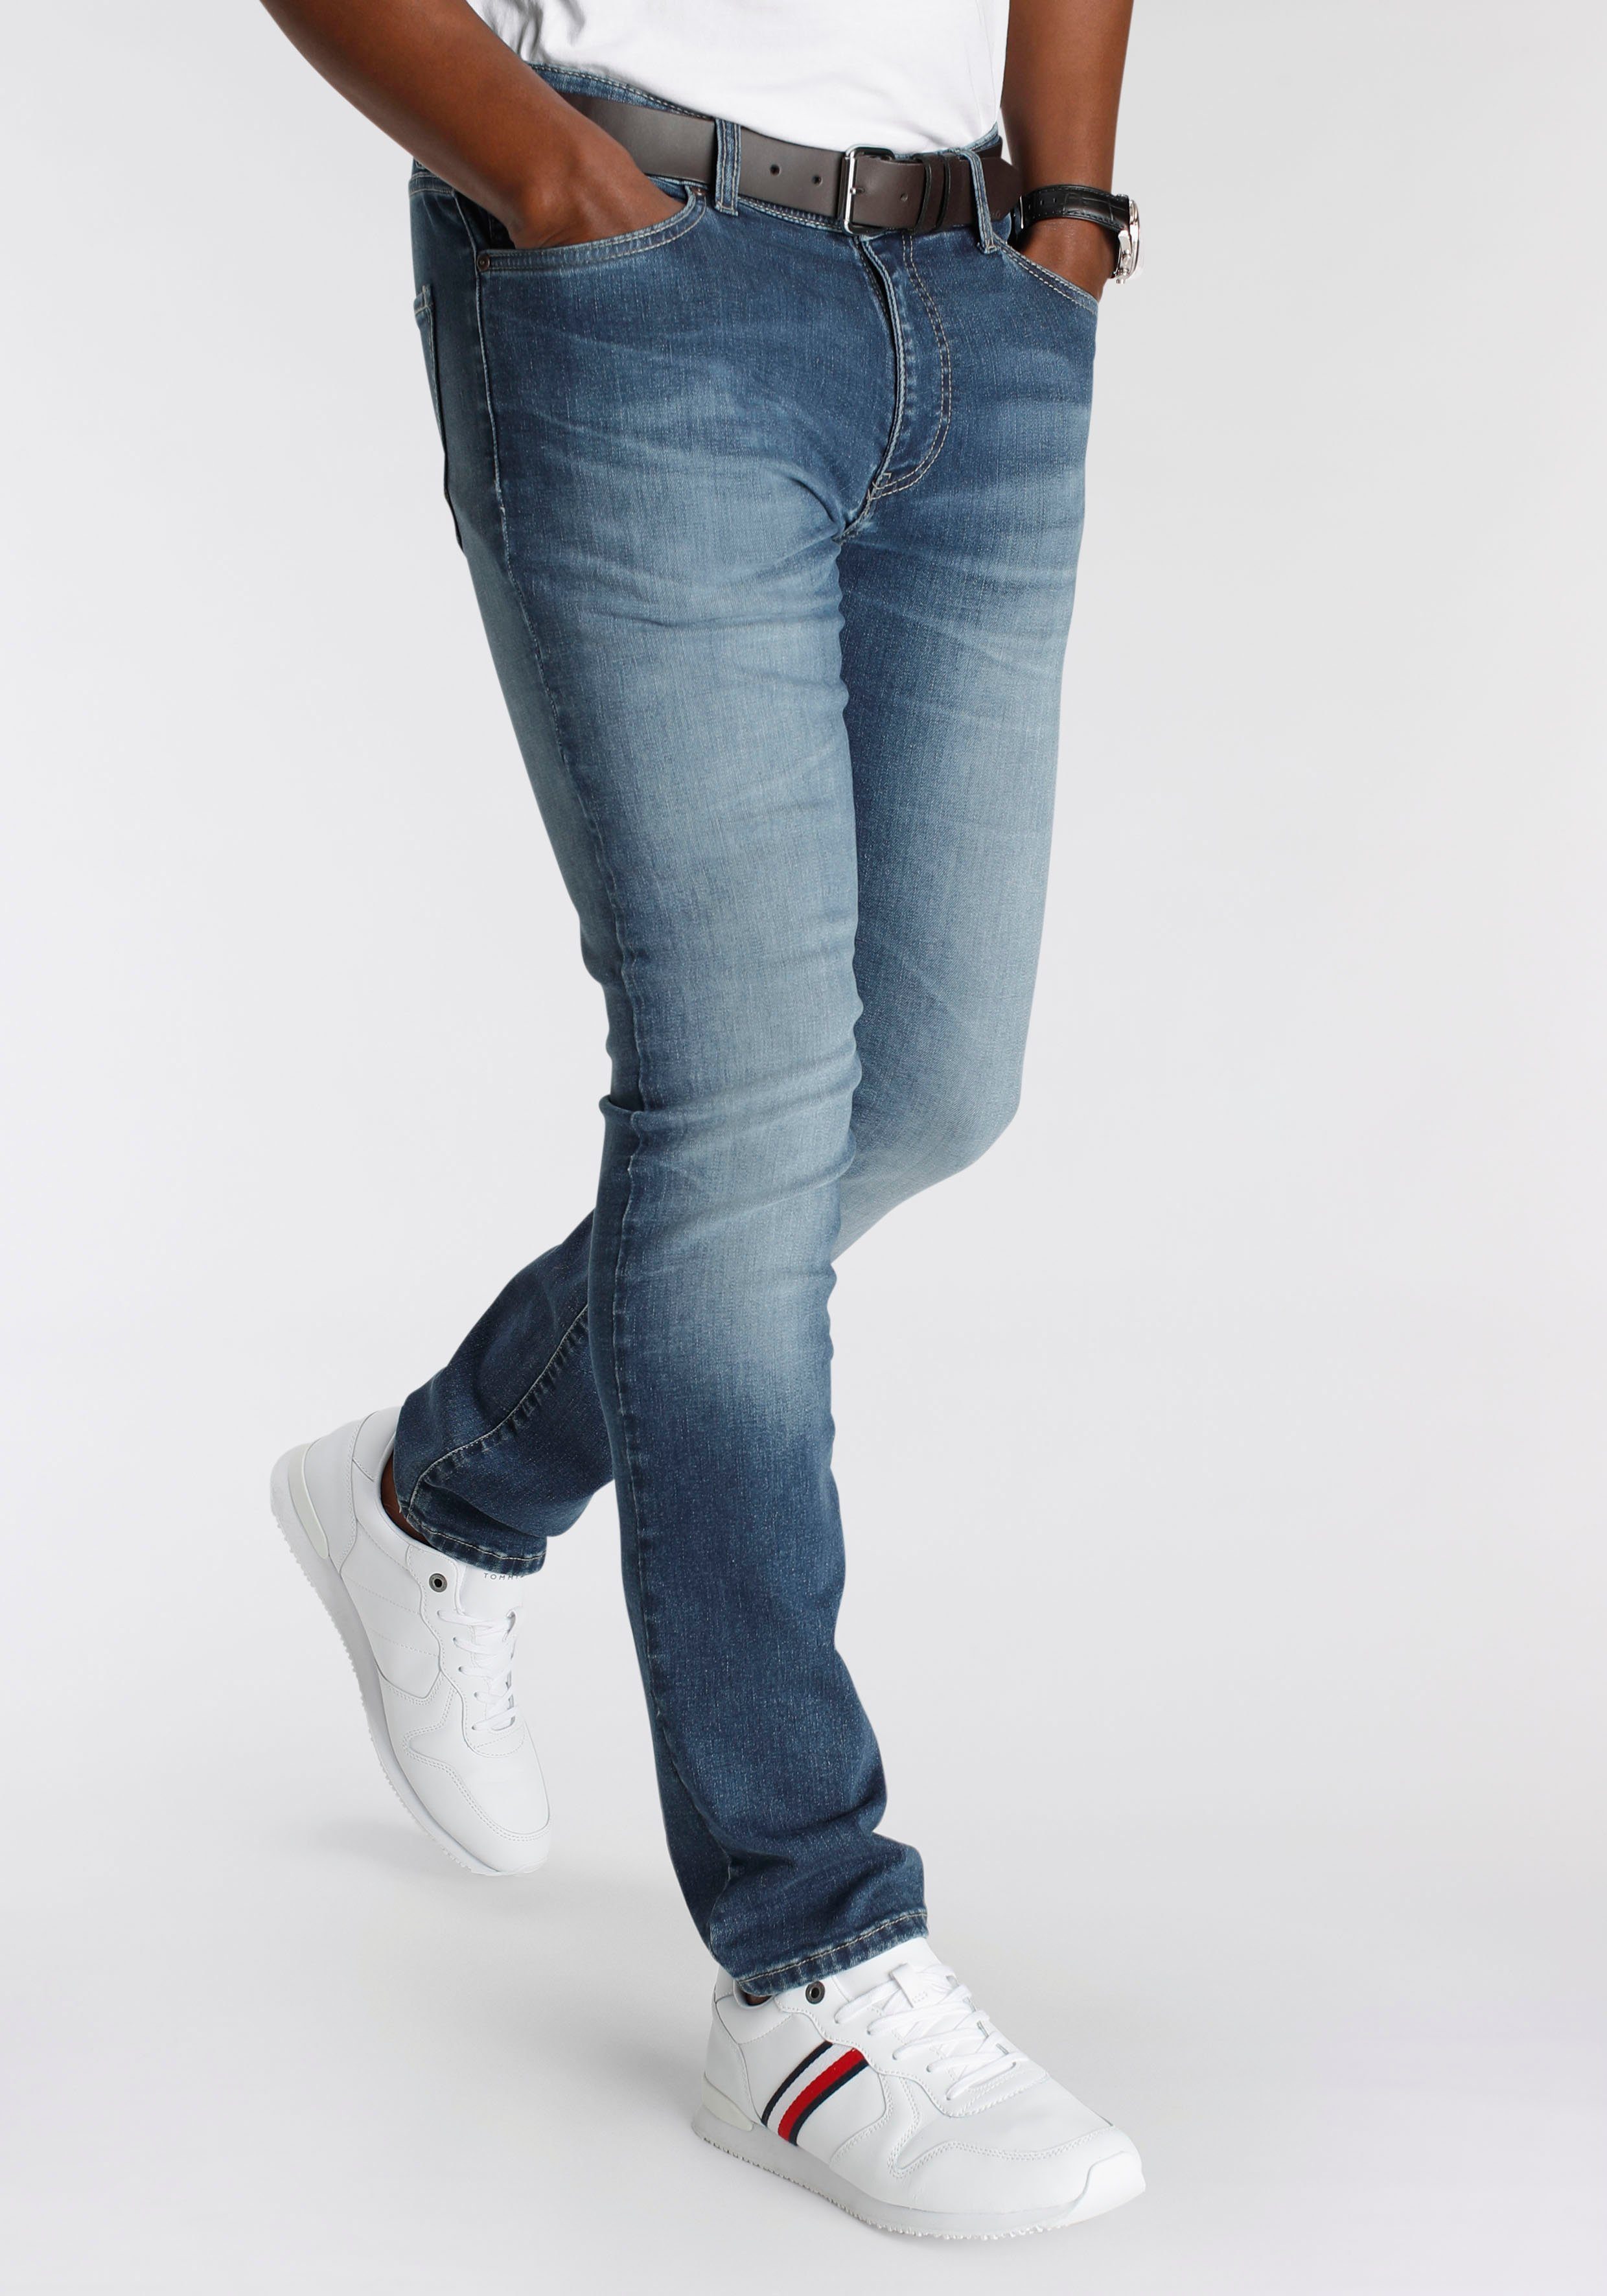 DELMAO Stretch-Jeans "Reed" mit schöner Innenverarbeitung - NEUE MARKE! blue used